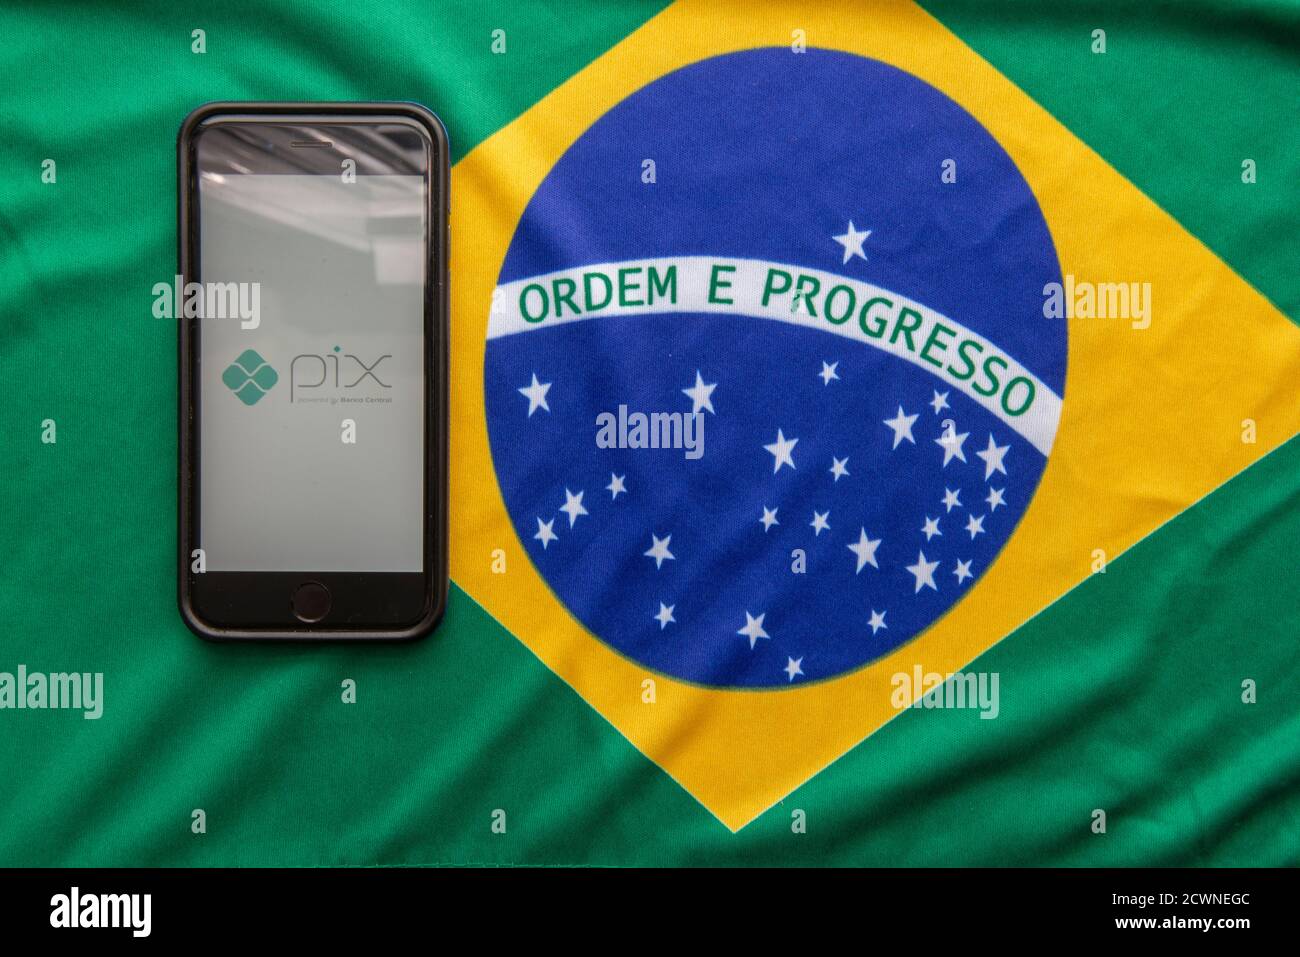 Florianopolis, Brasile. 28/09/2020: Vista dall'alto del logo Pix sullo smartphone screenshabout della bandiera brasiliana. PIX, nuovo sistema di pagamento elettronico brasiliano. B Foto Stock